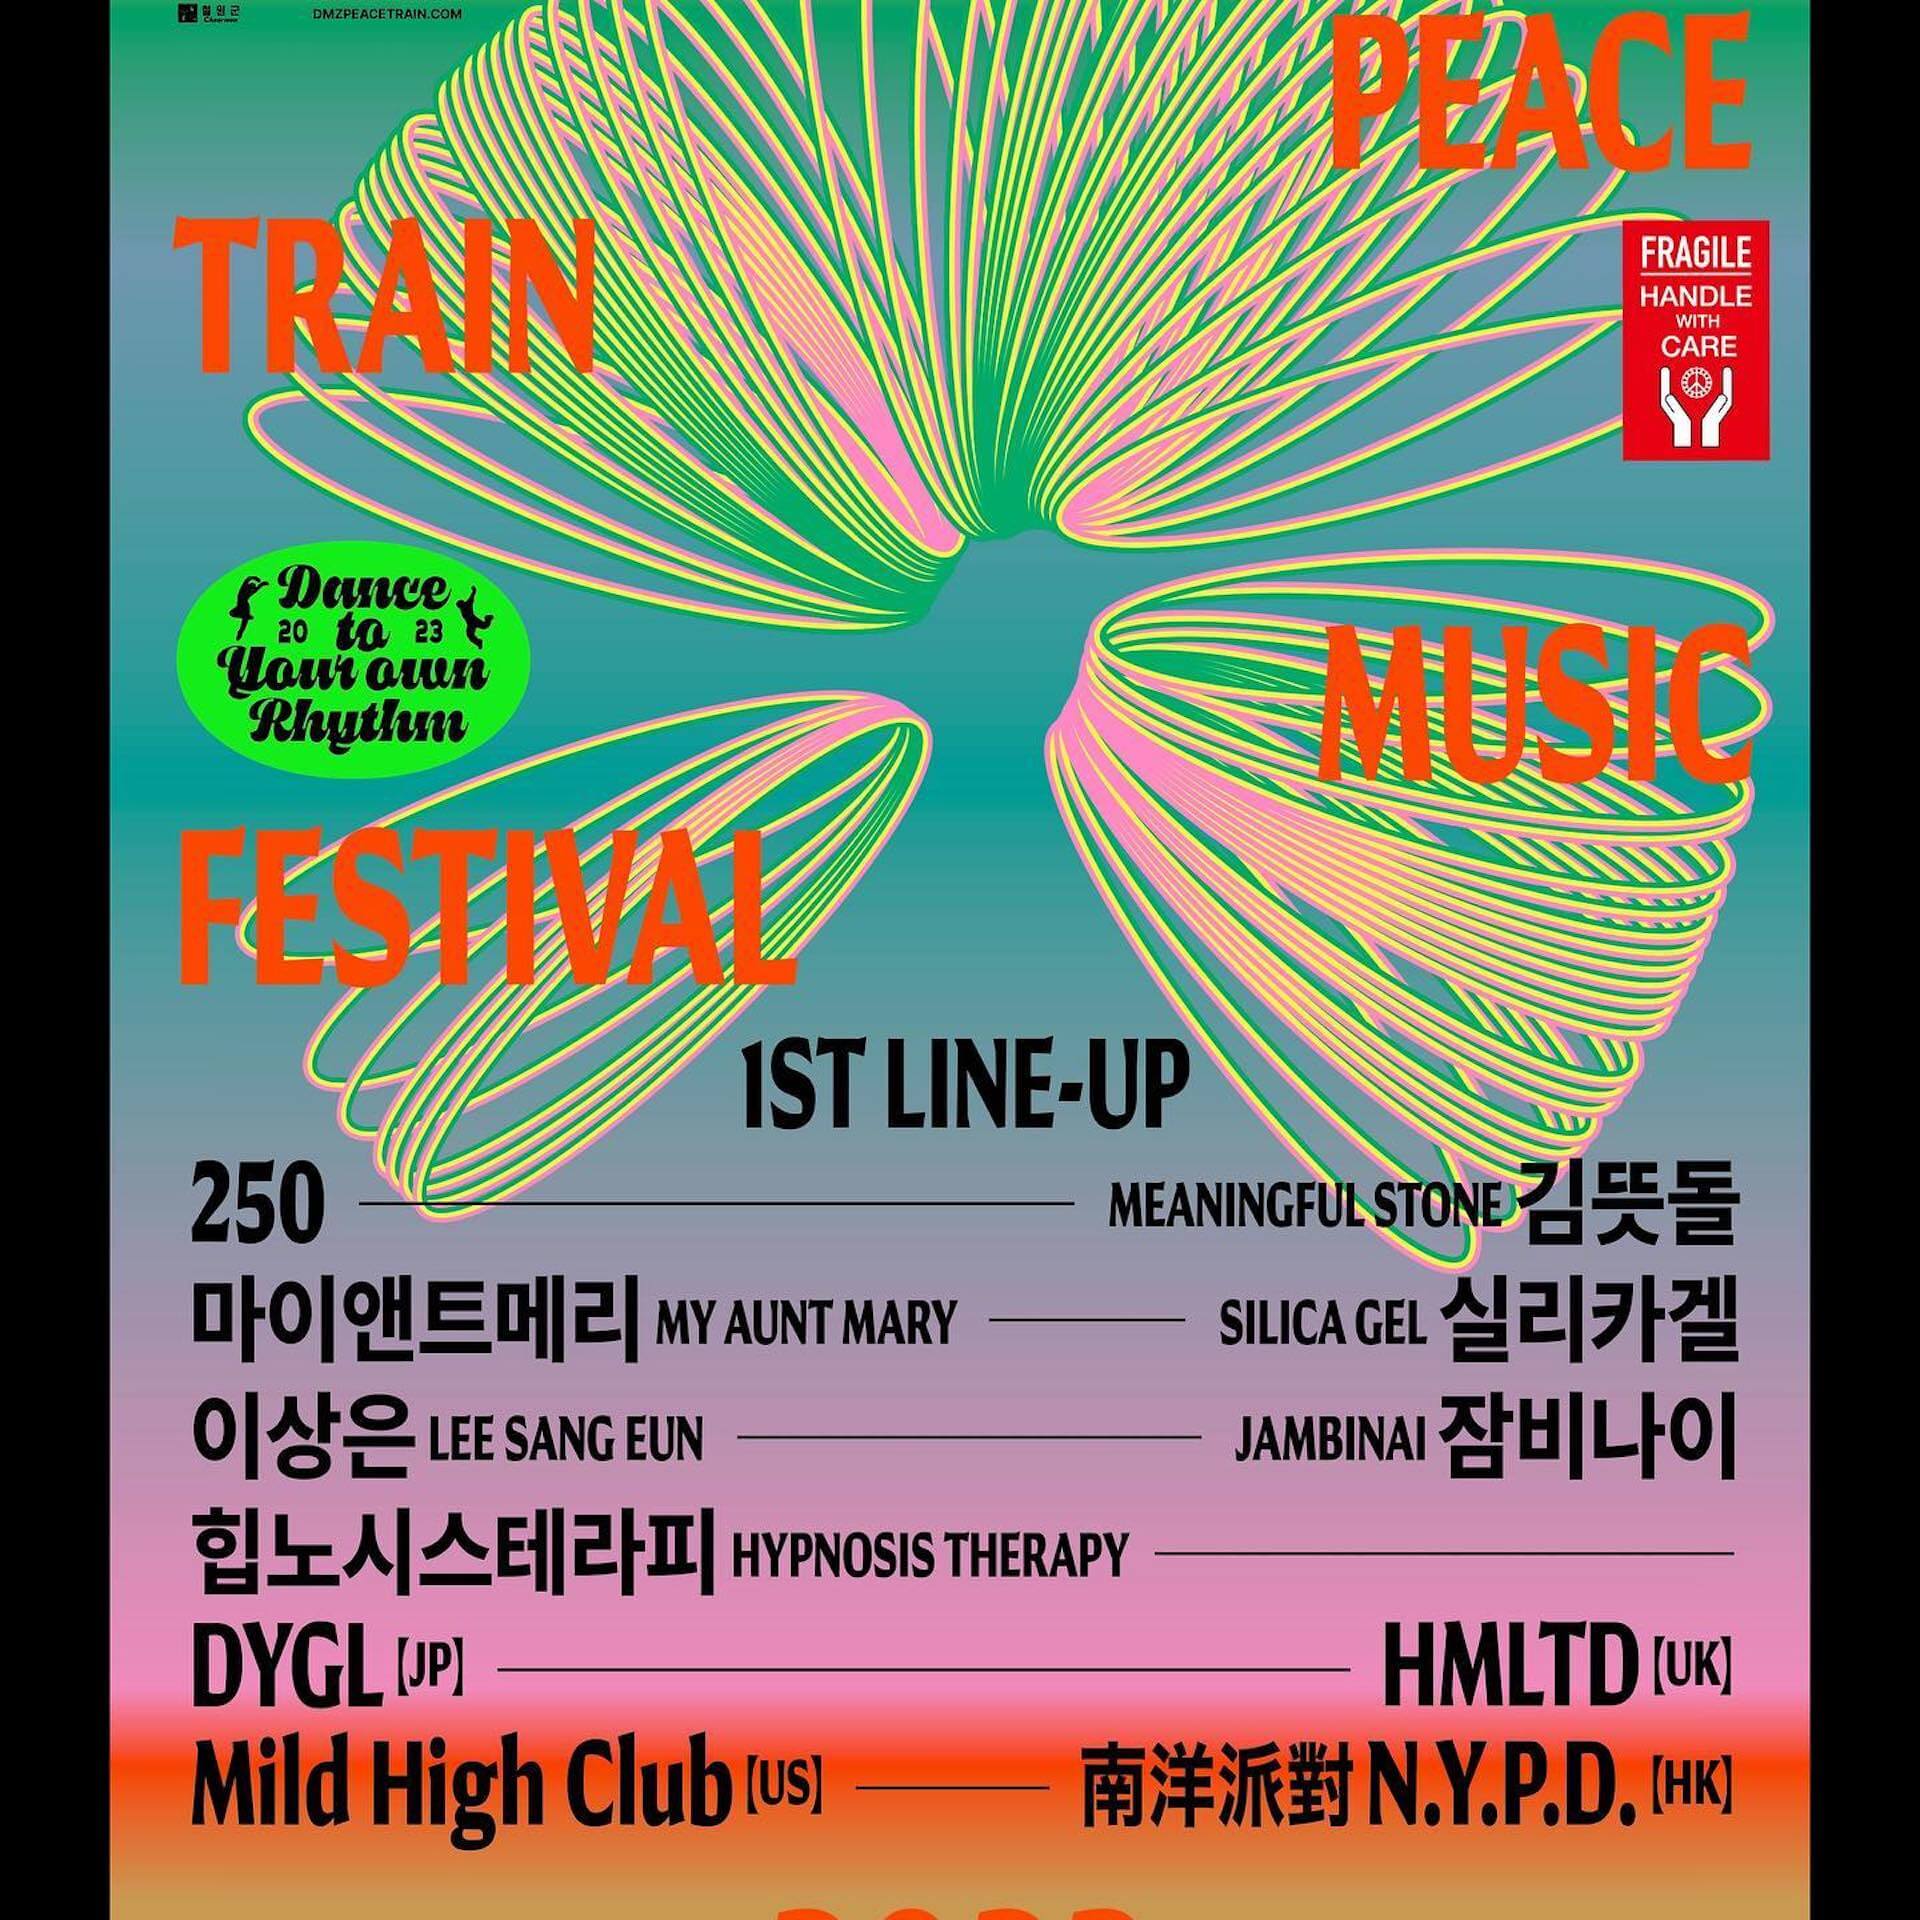 単独ツアーを控えるDYGLが未発表の新曲「Acervation」のライブ動画を公開｜さらに韓国＜DMZ Peace Train Music Festival＞、台湾＜Vagabond Festival＞に参加することを発表 music230626_dygl-02